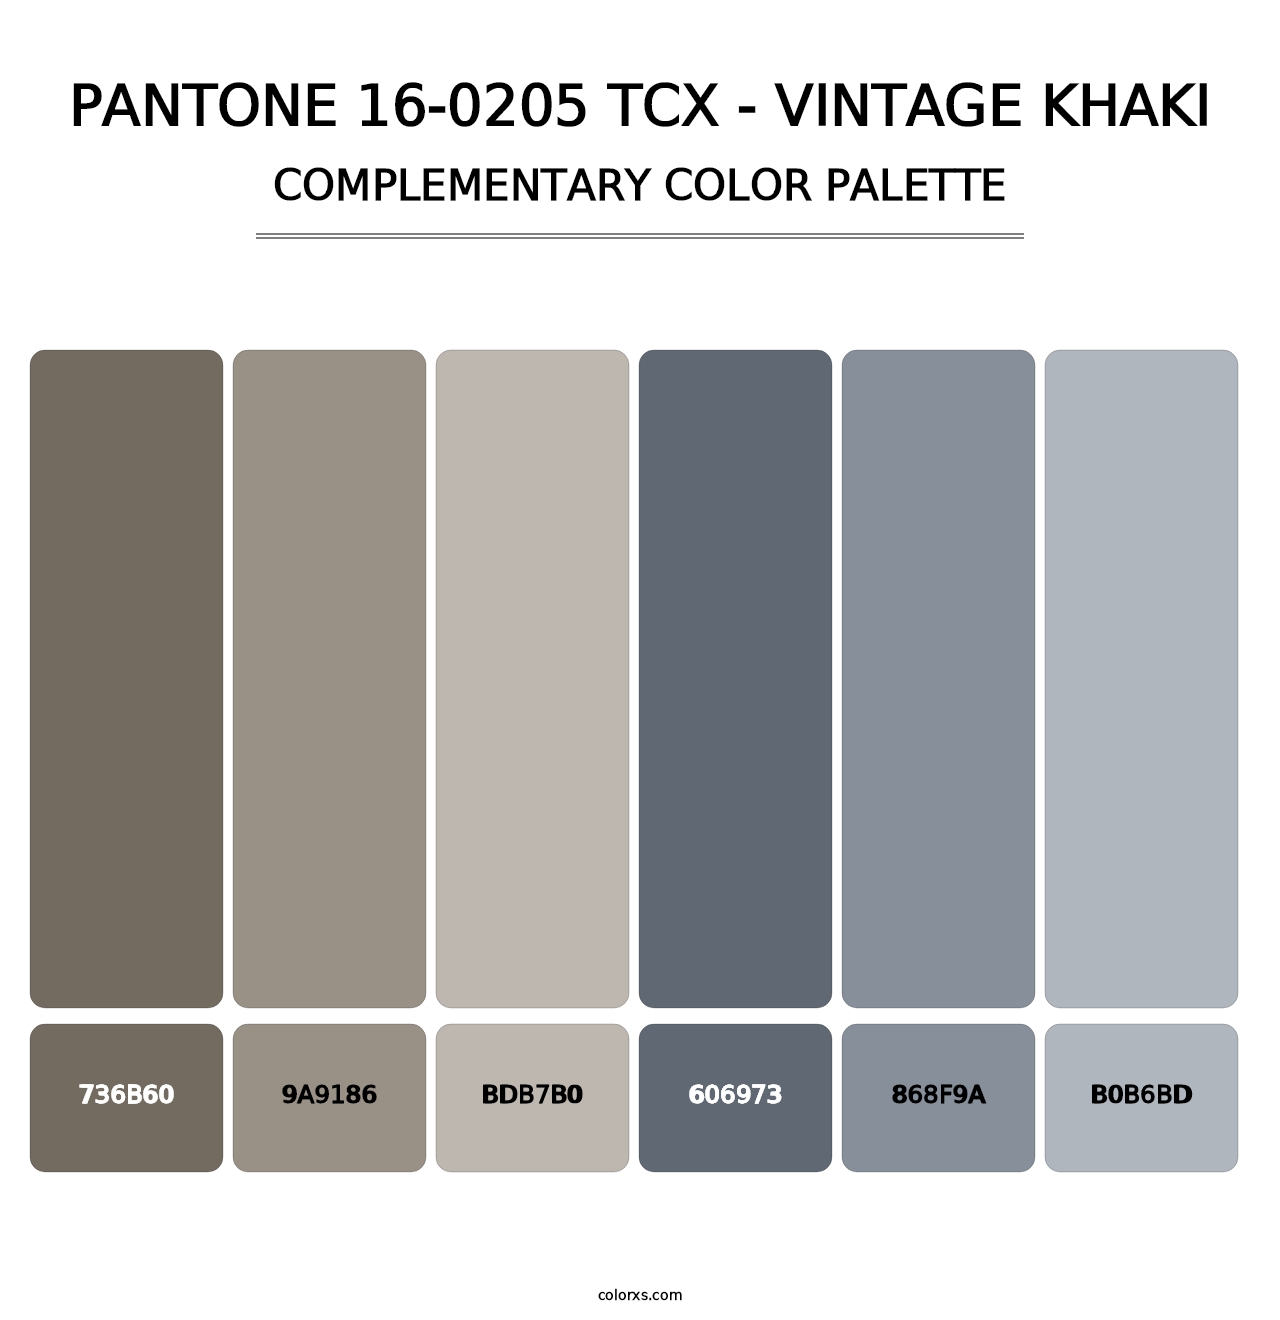 PANTONE 16-0205 TCX - Vintage Khaki - Complementary Color Palette